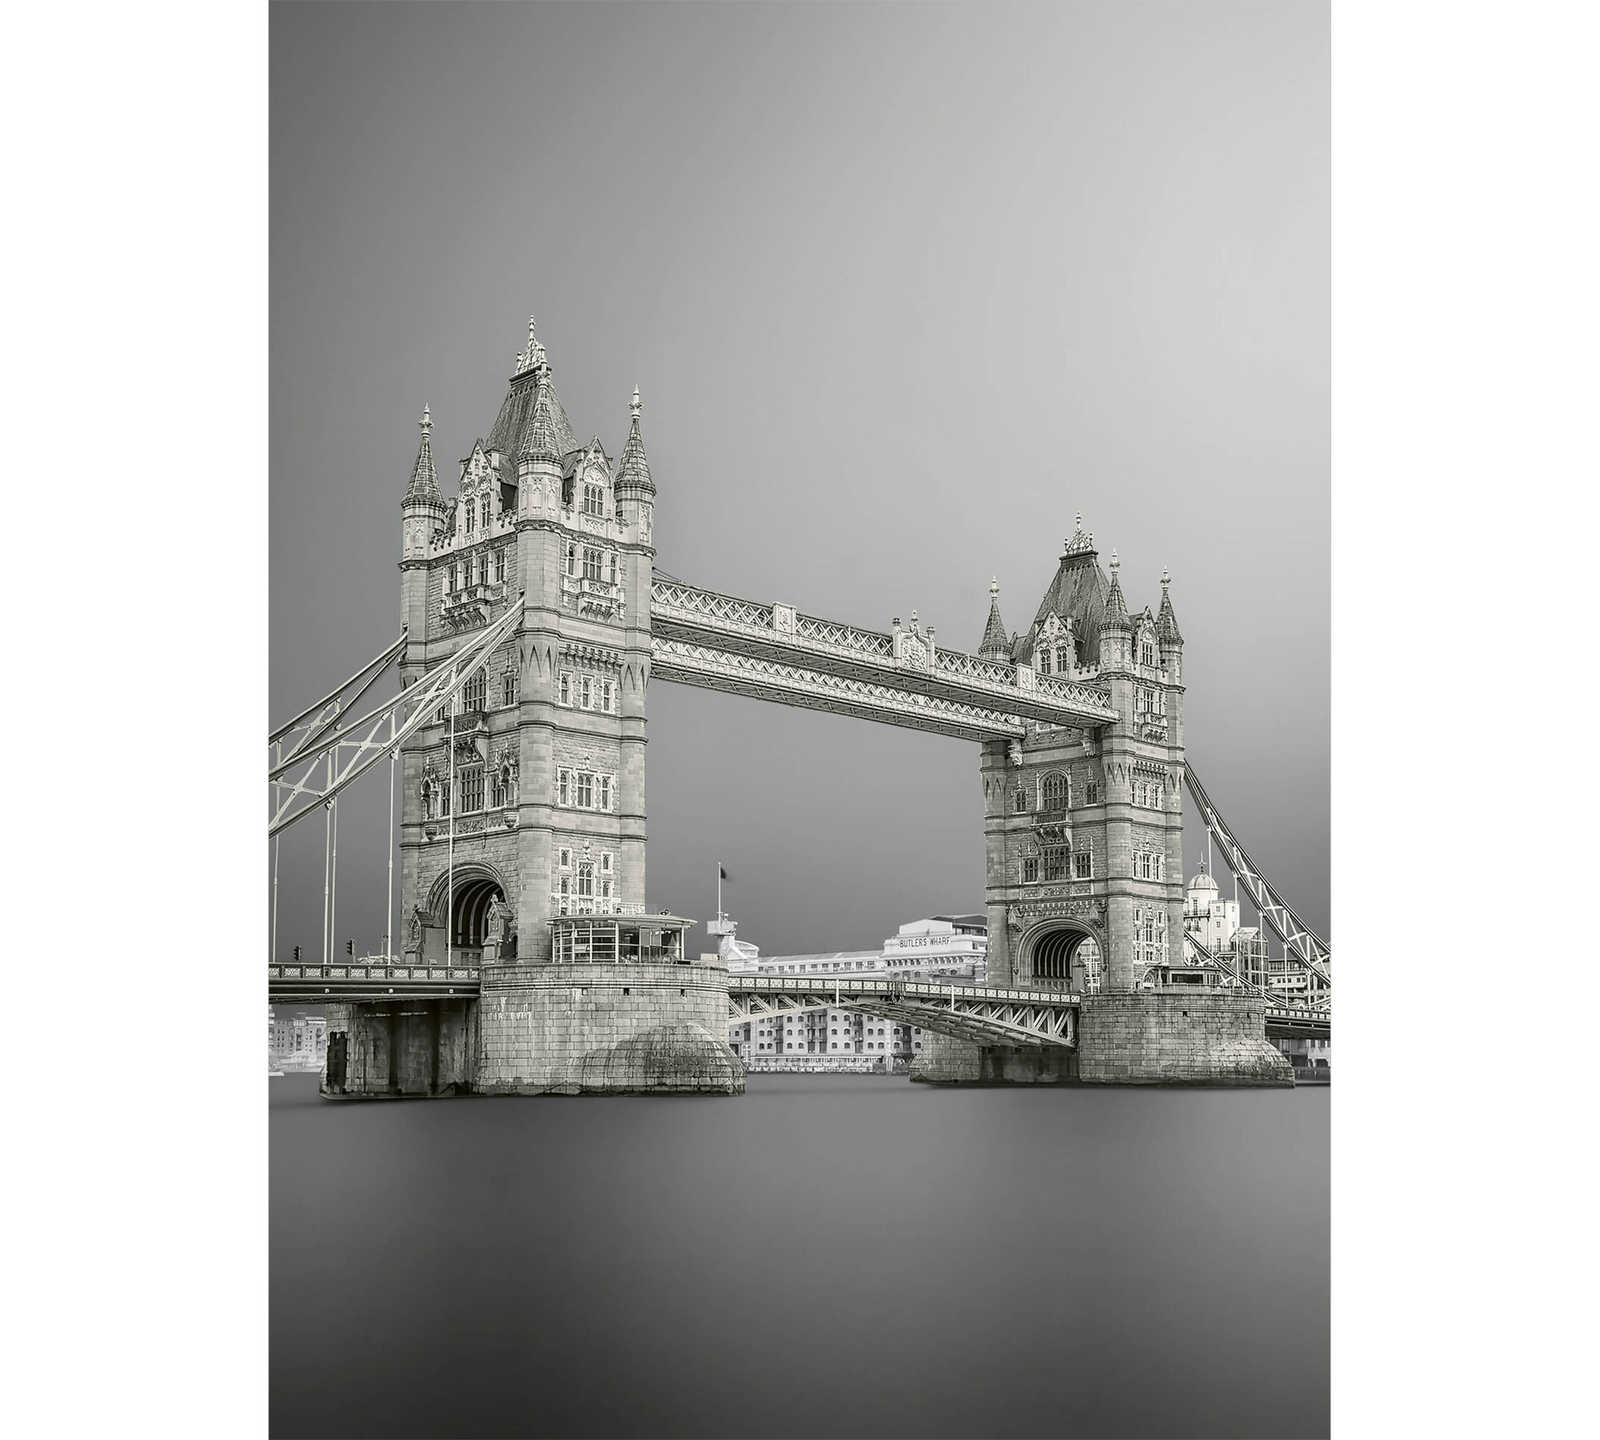         Photo wallpaper London Tower Bridge - grey, white, black
    